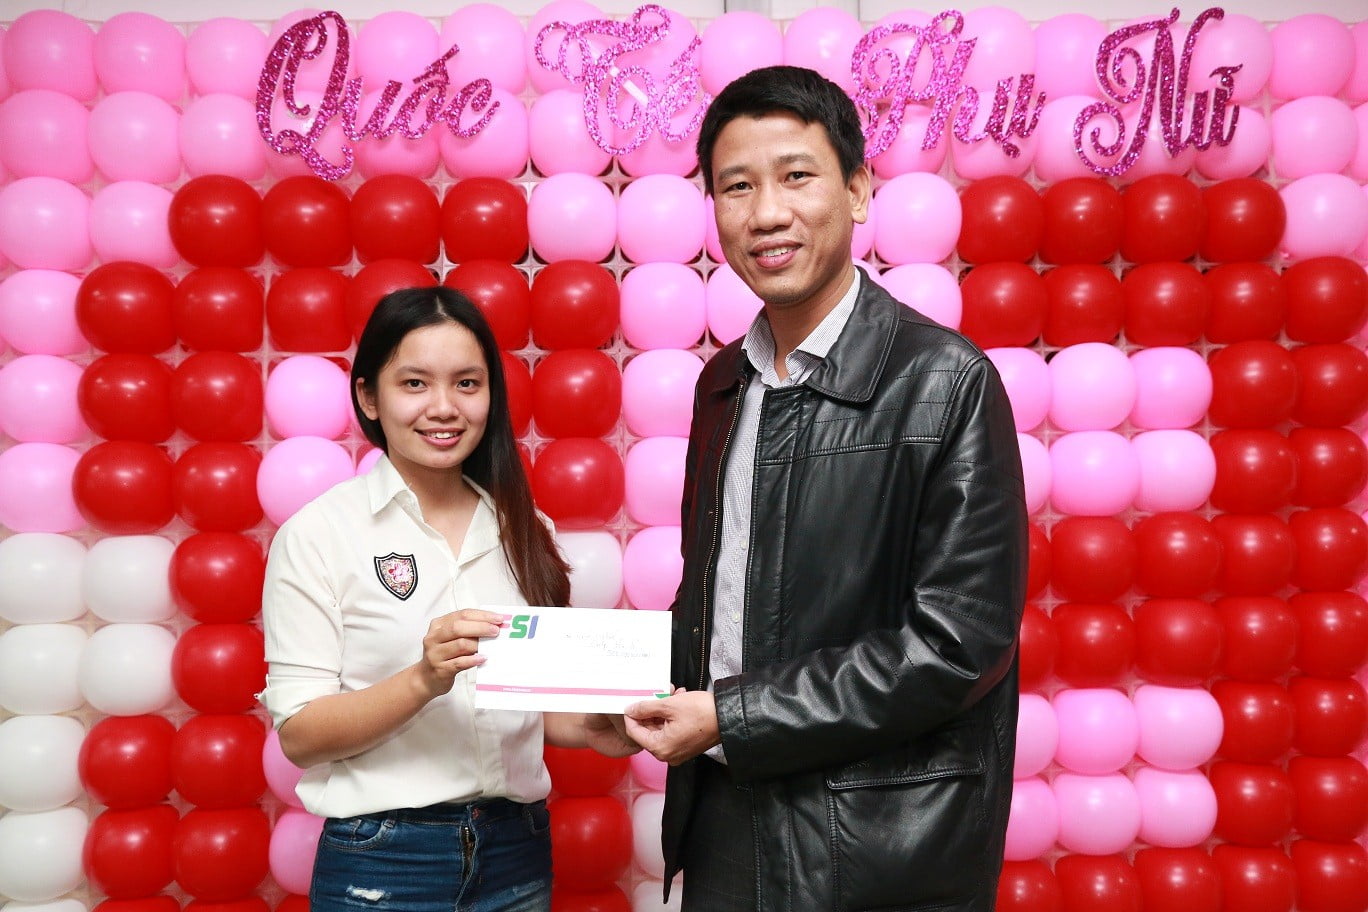 Chị Phan Thị Bình – Người xuất sắc giành giải thưởng trò chơi “Gol 2 lỗ”